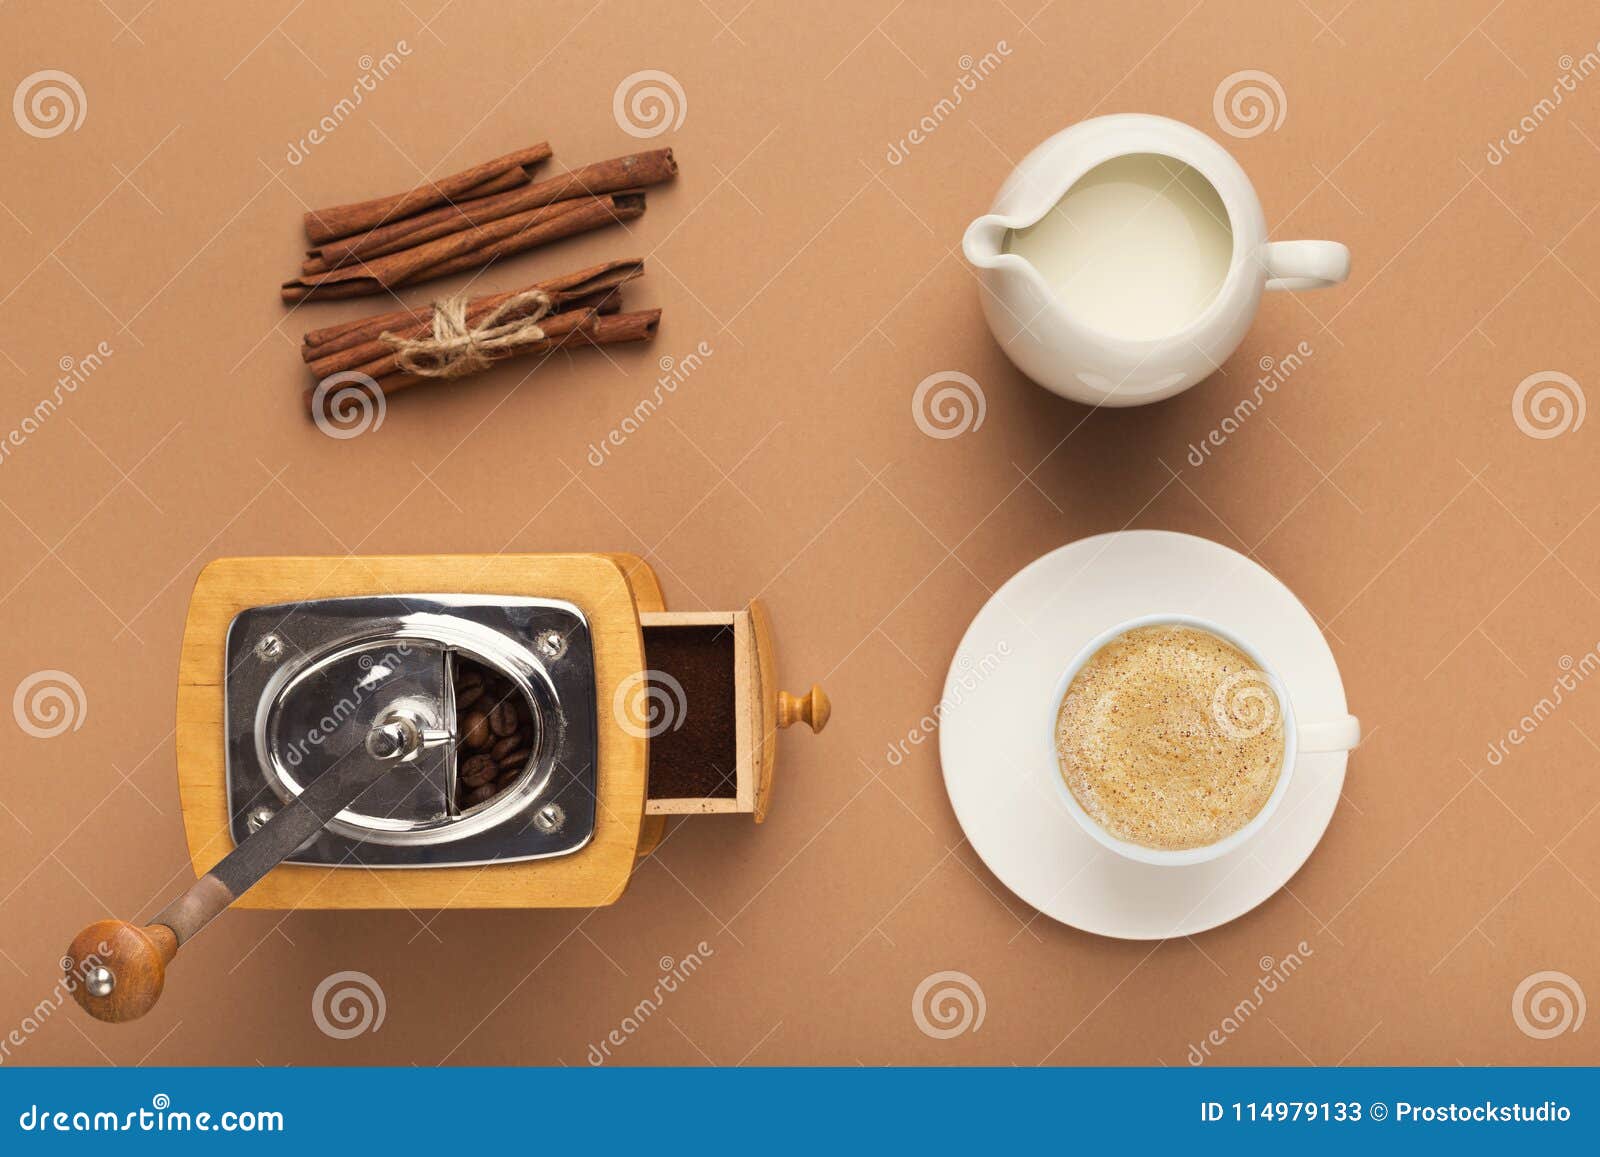 Προετοιμασία του υποβάθρου καφέ, τοπ άποψη. Τοπ άποψη σχετικά με τον εκλεκτής ποιότητας μύλο καφέ, το βάζο γάλακτος, το φλυτζάνι και την κανέλα στο μπεζ σκηνικό Παραγωγή του foamy υποβάθρου cappuccino, διάστημα αντιγράφων